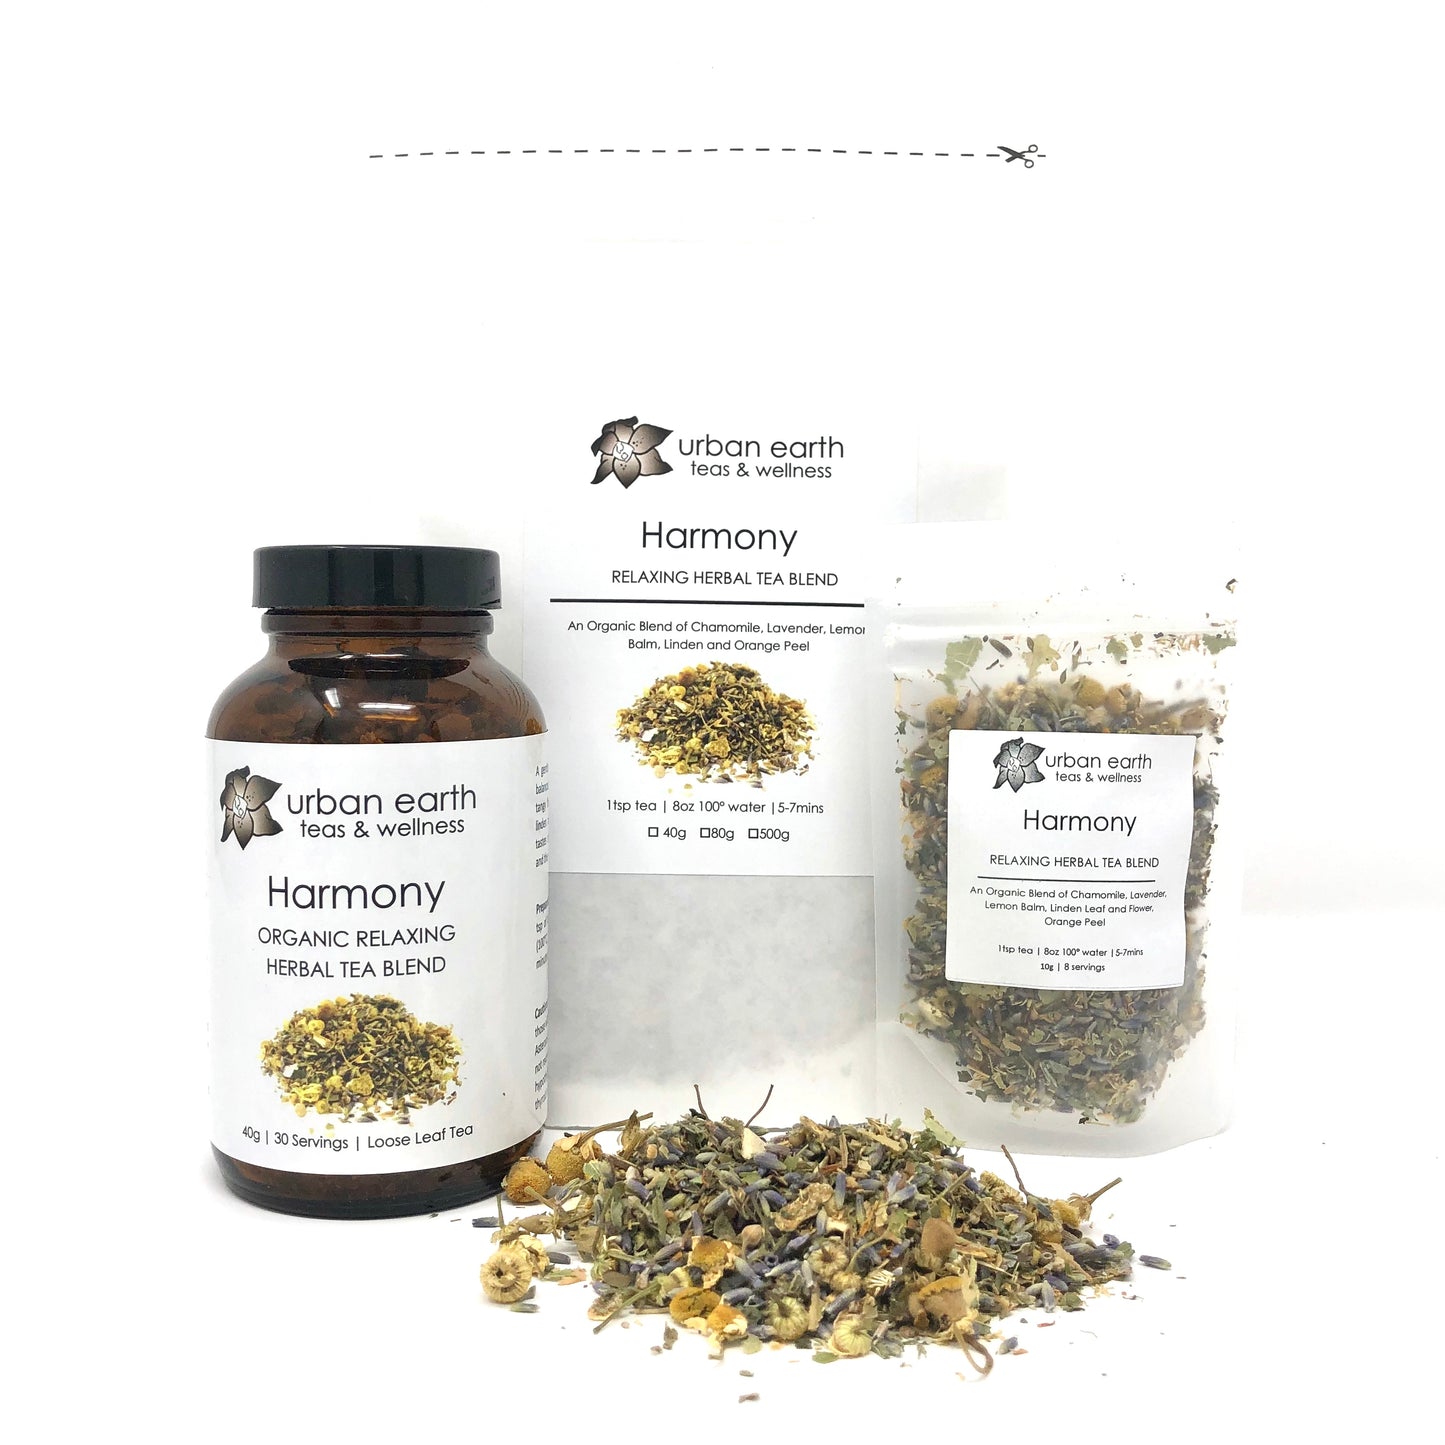 Harmony (Relaxing Herbal Tea Blend)